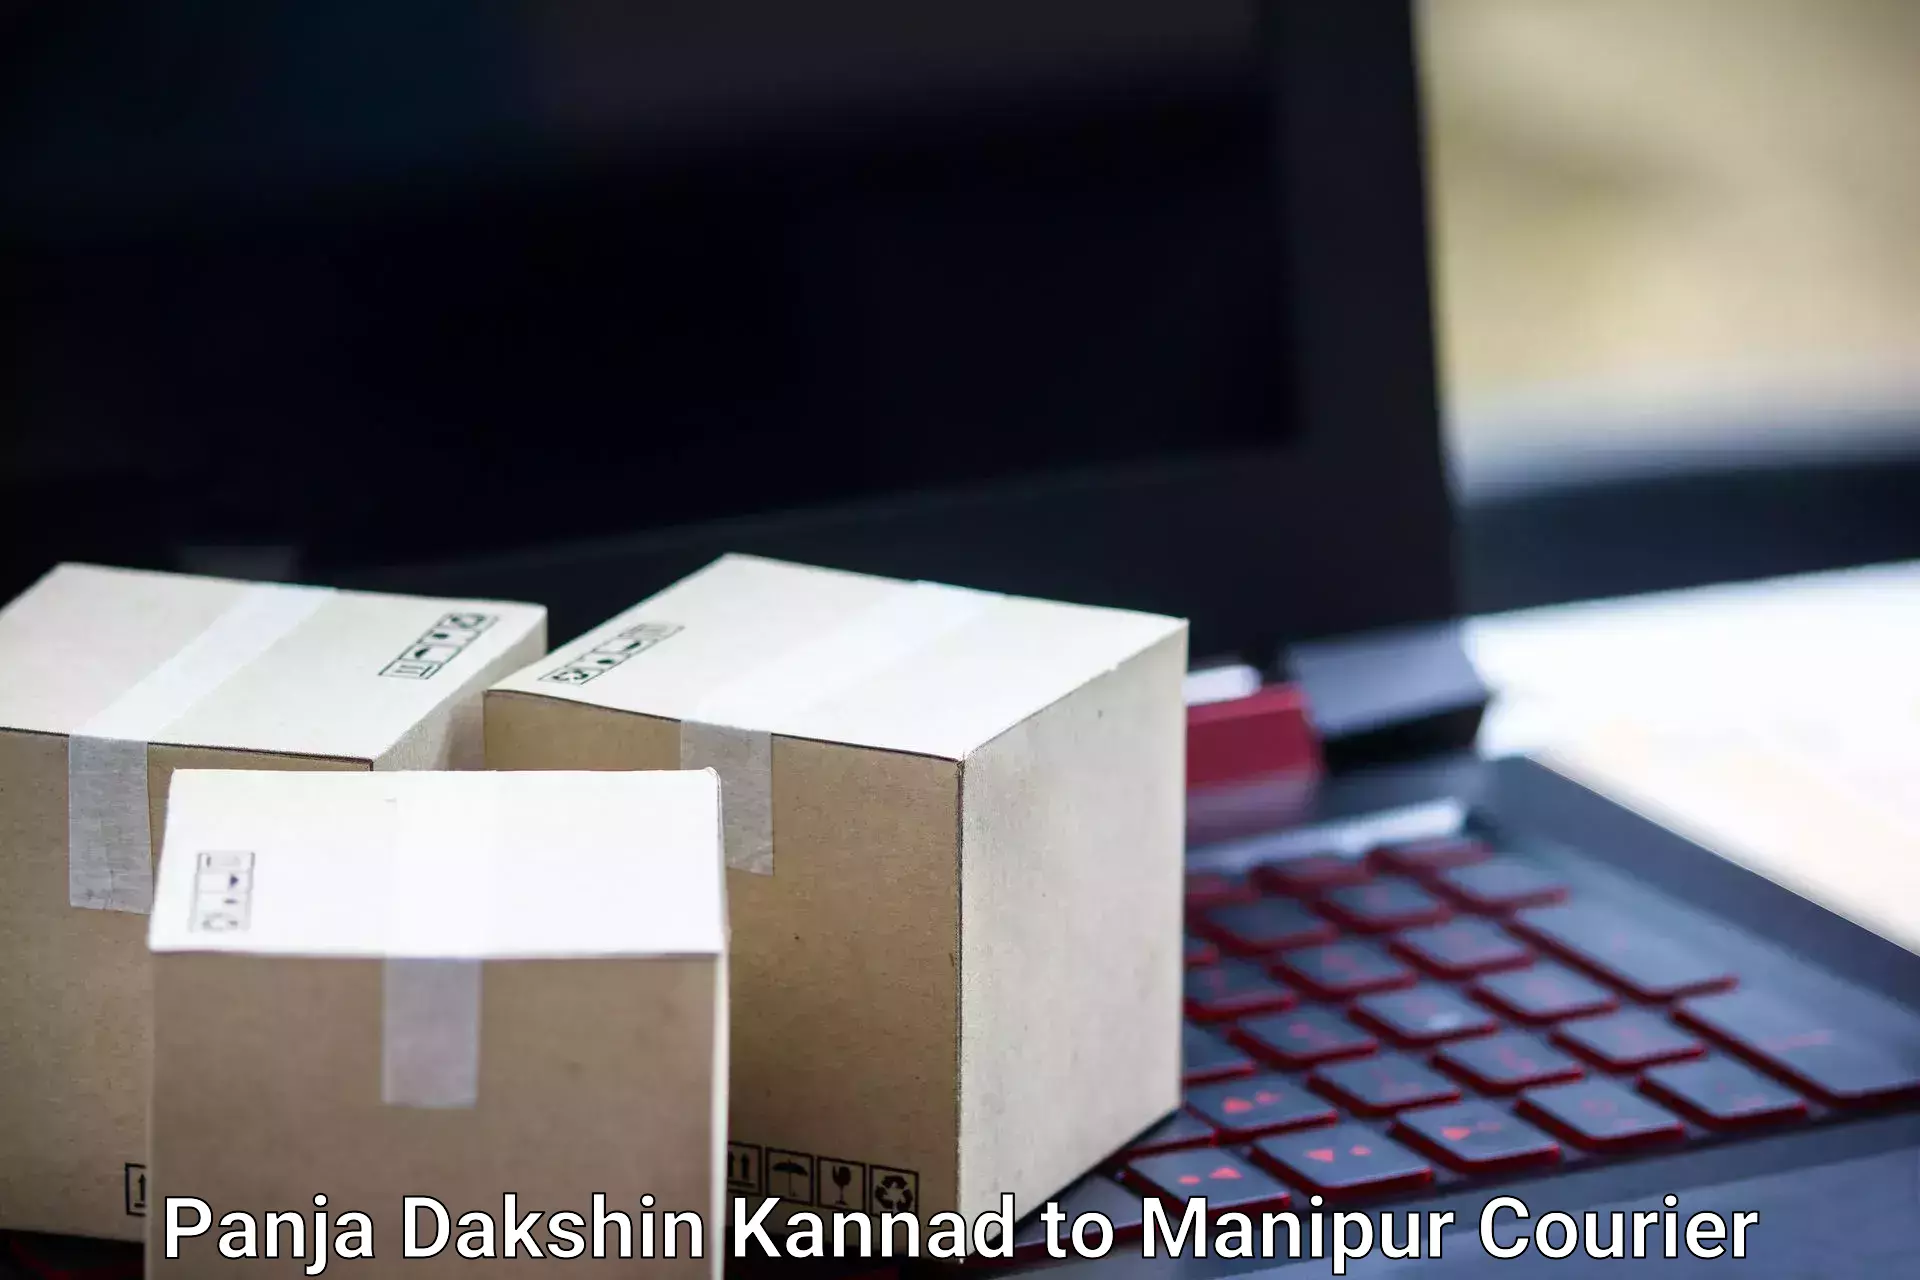 Premium luggage courier Panja Dakshin Kannad to Manipur